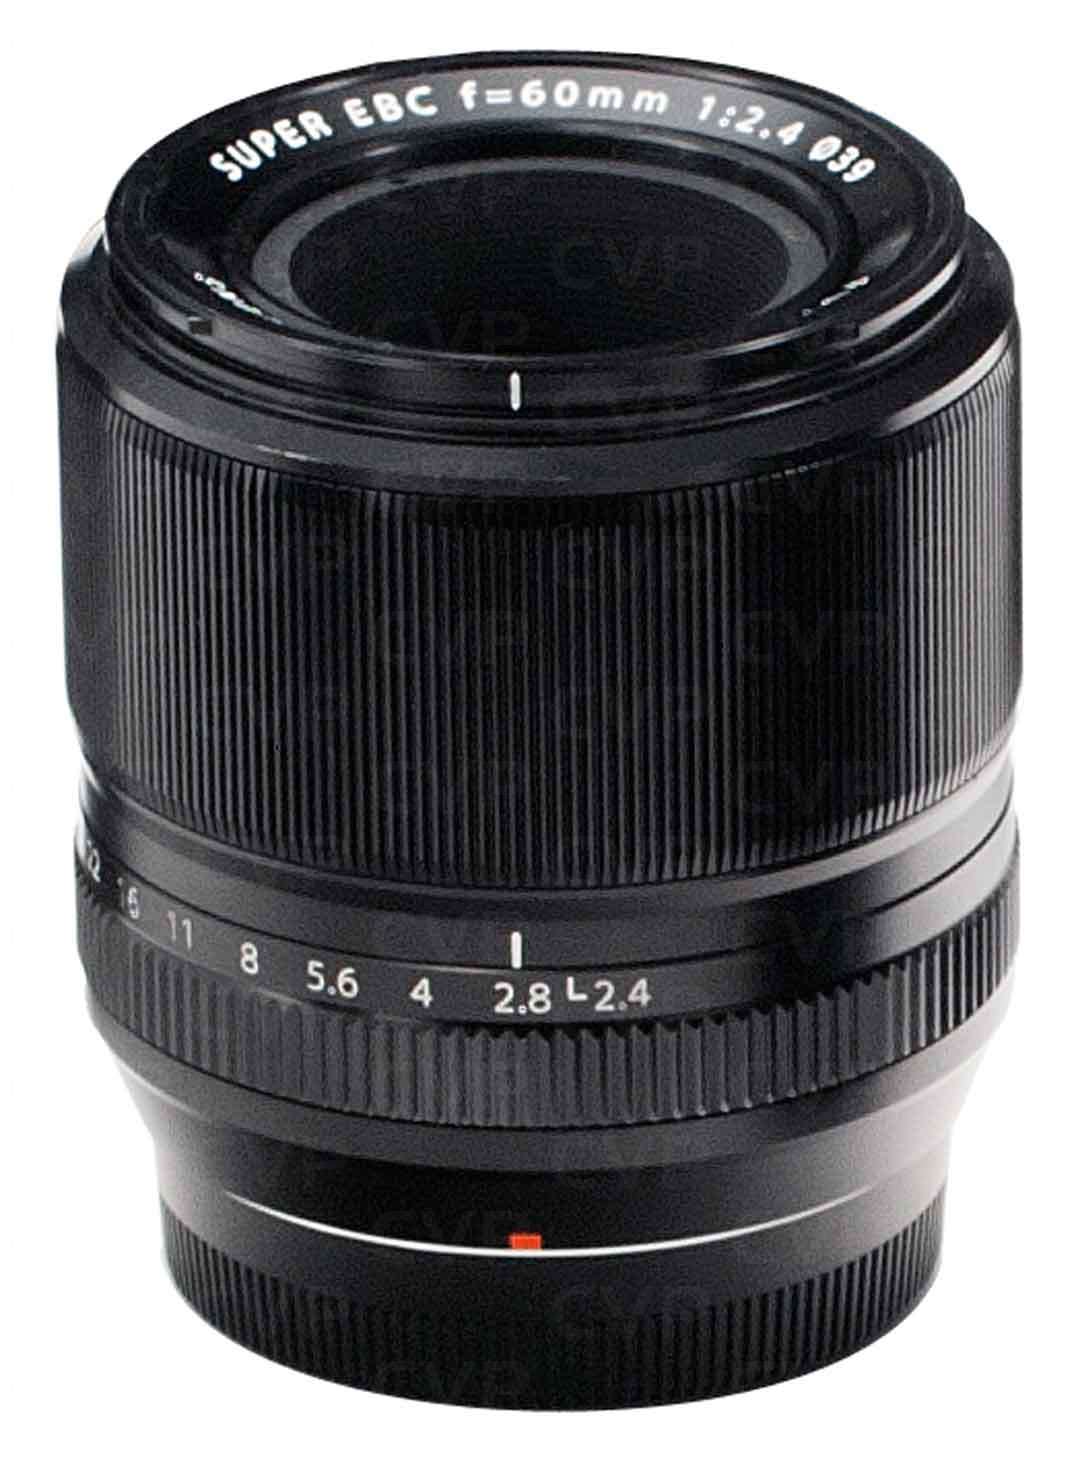 Buy Fujifilm XF 60mm F2.4 R Macro Lens X Mount Black